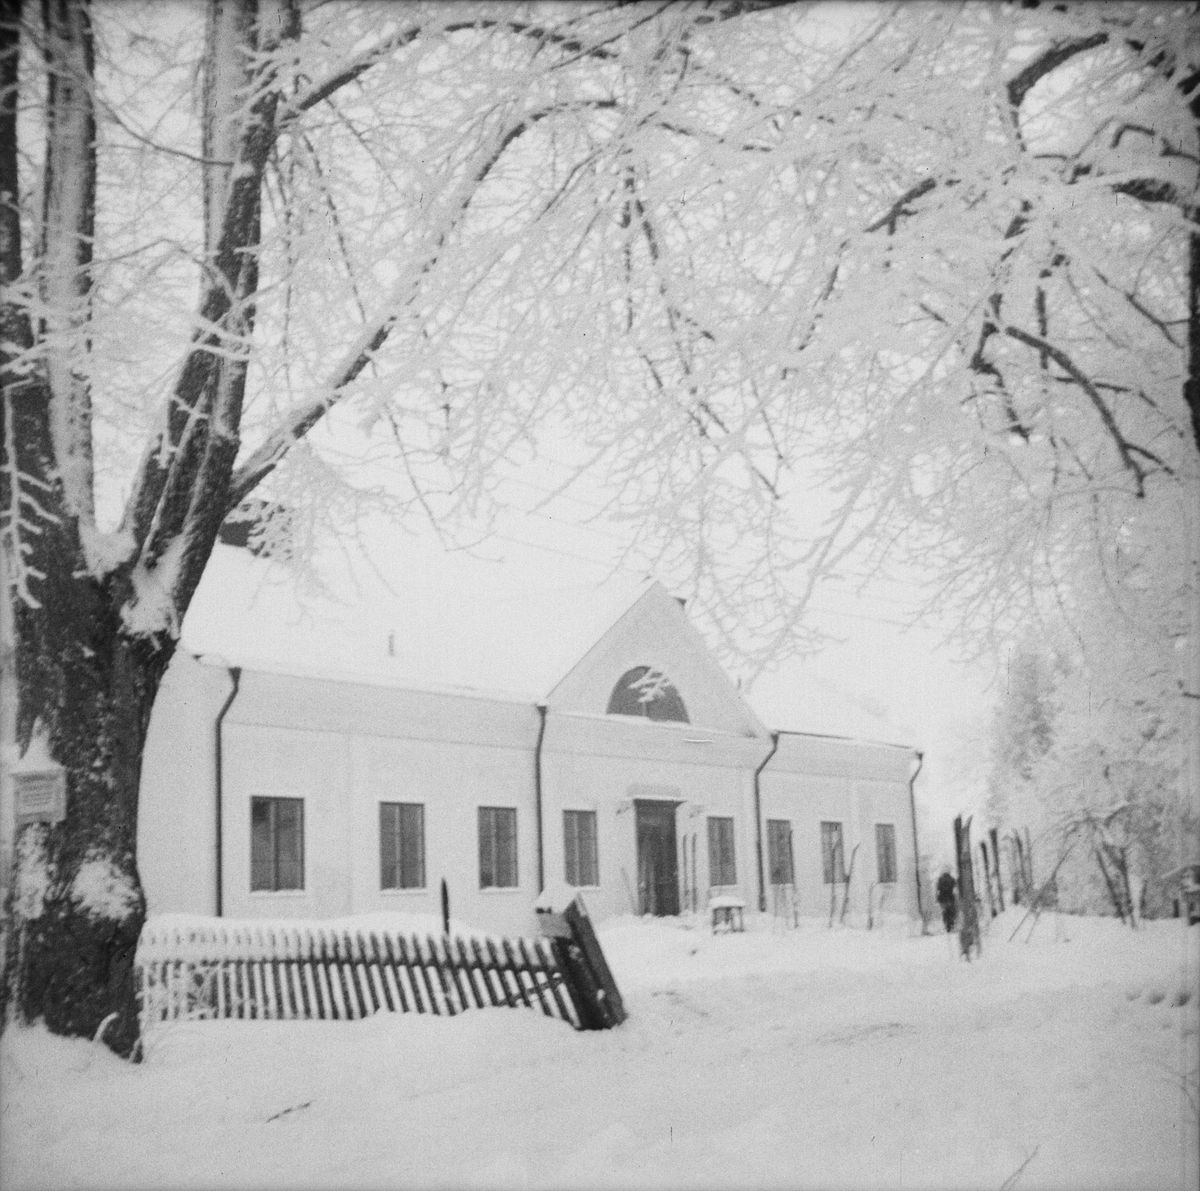 Invigning av Vårdsätra gård, Uppsala, januari 1948